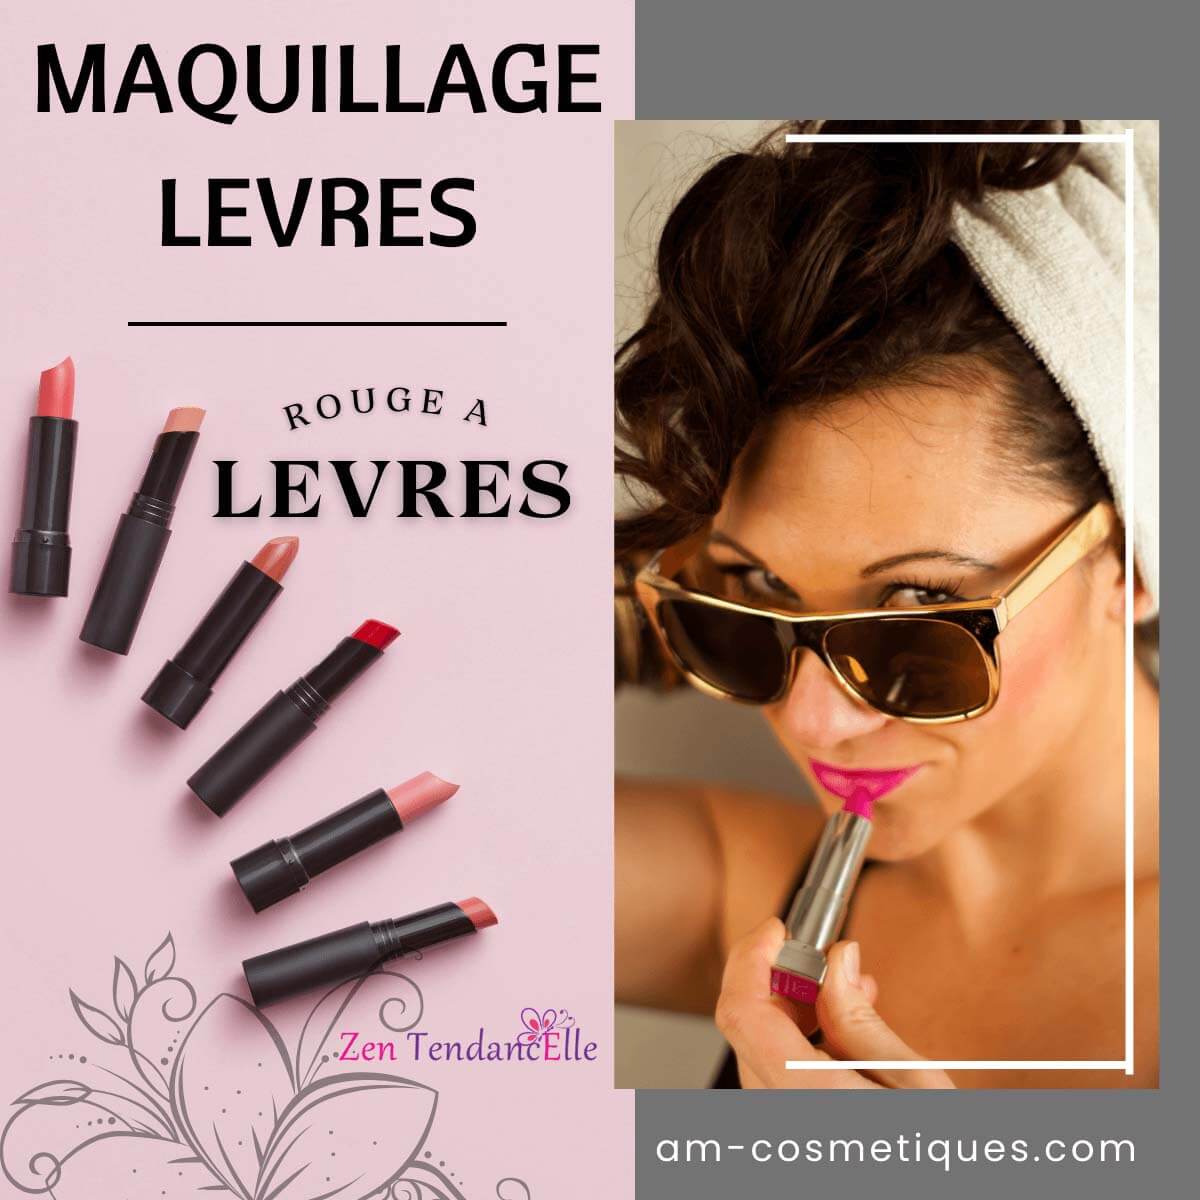 Rouge_a_levres_pas_cher_maquillage_makeup_AM-Cosmetiques_Zen_TendancElle.jpg